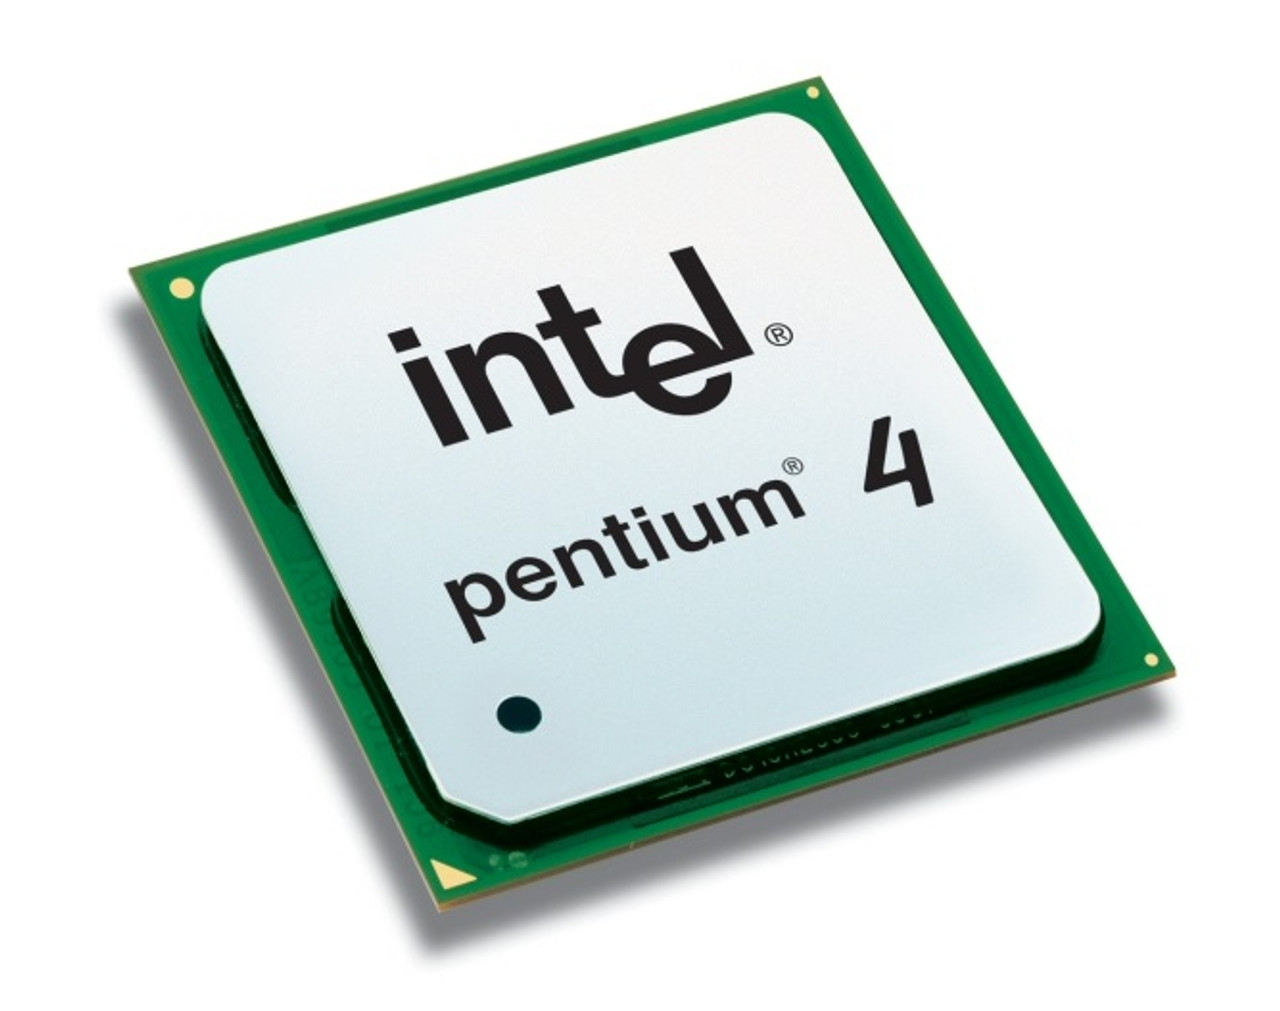 BX80547PG3000EJ - Intel Pentium 4 530J 3.00GHz 800MHz FSB 1MB L2 Cache Socket 775 Processor